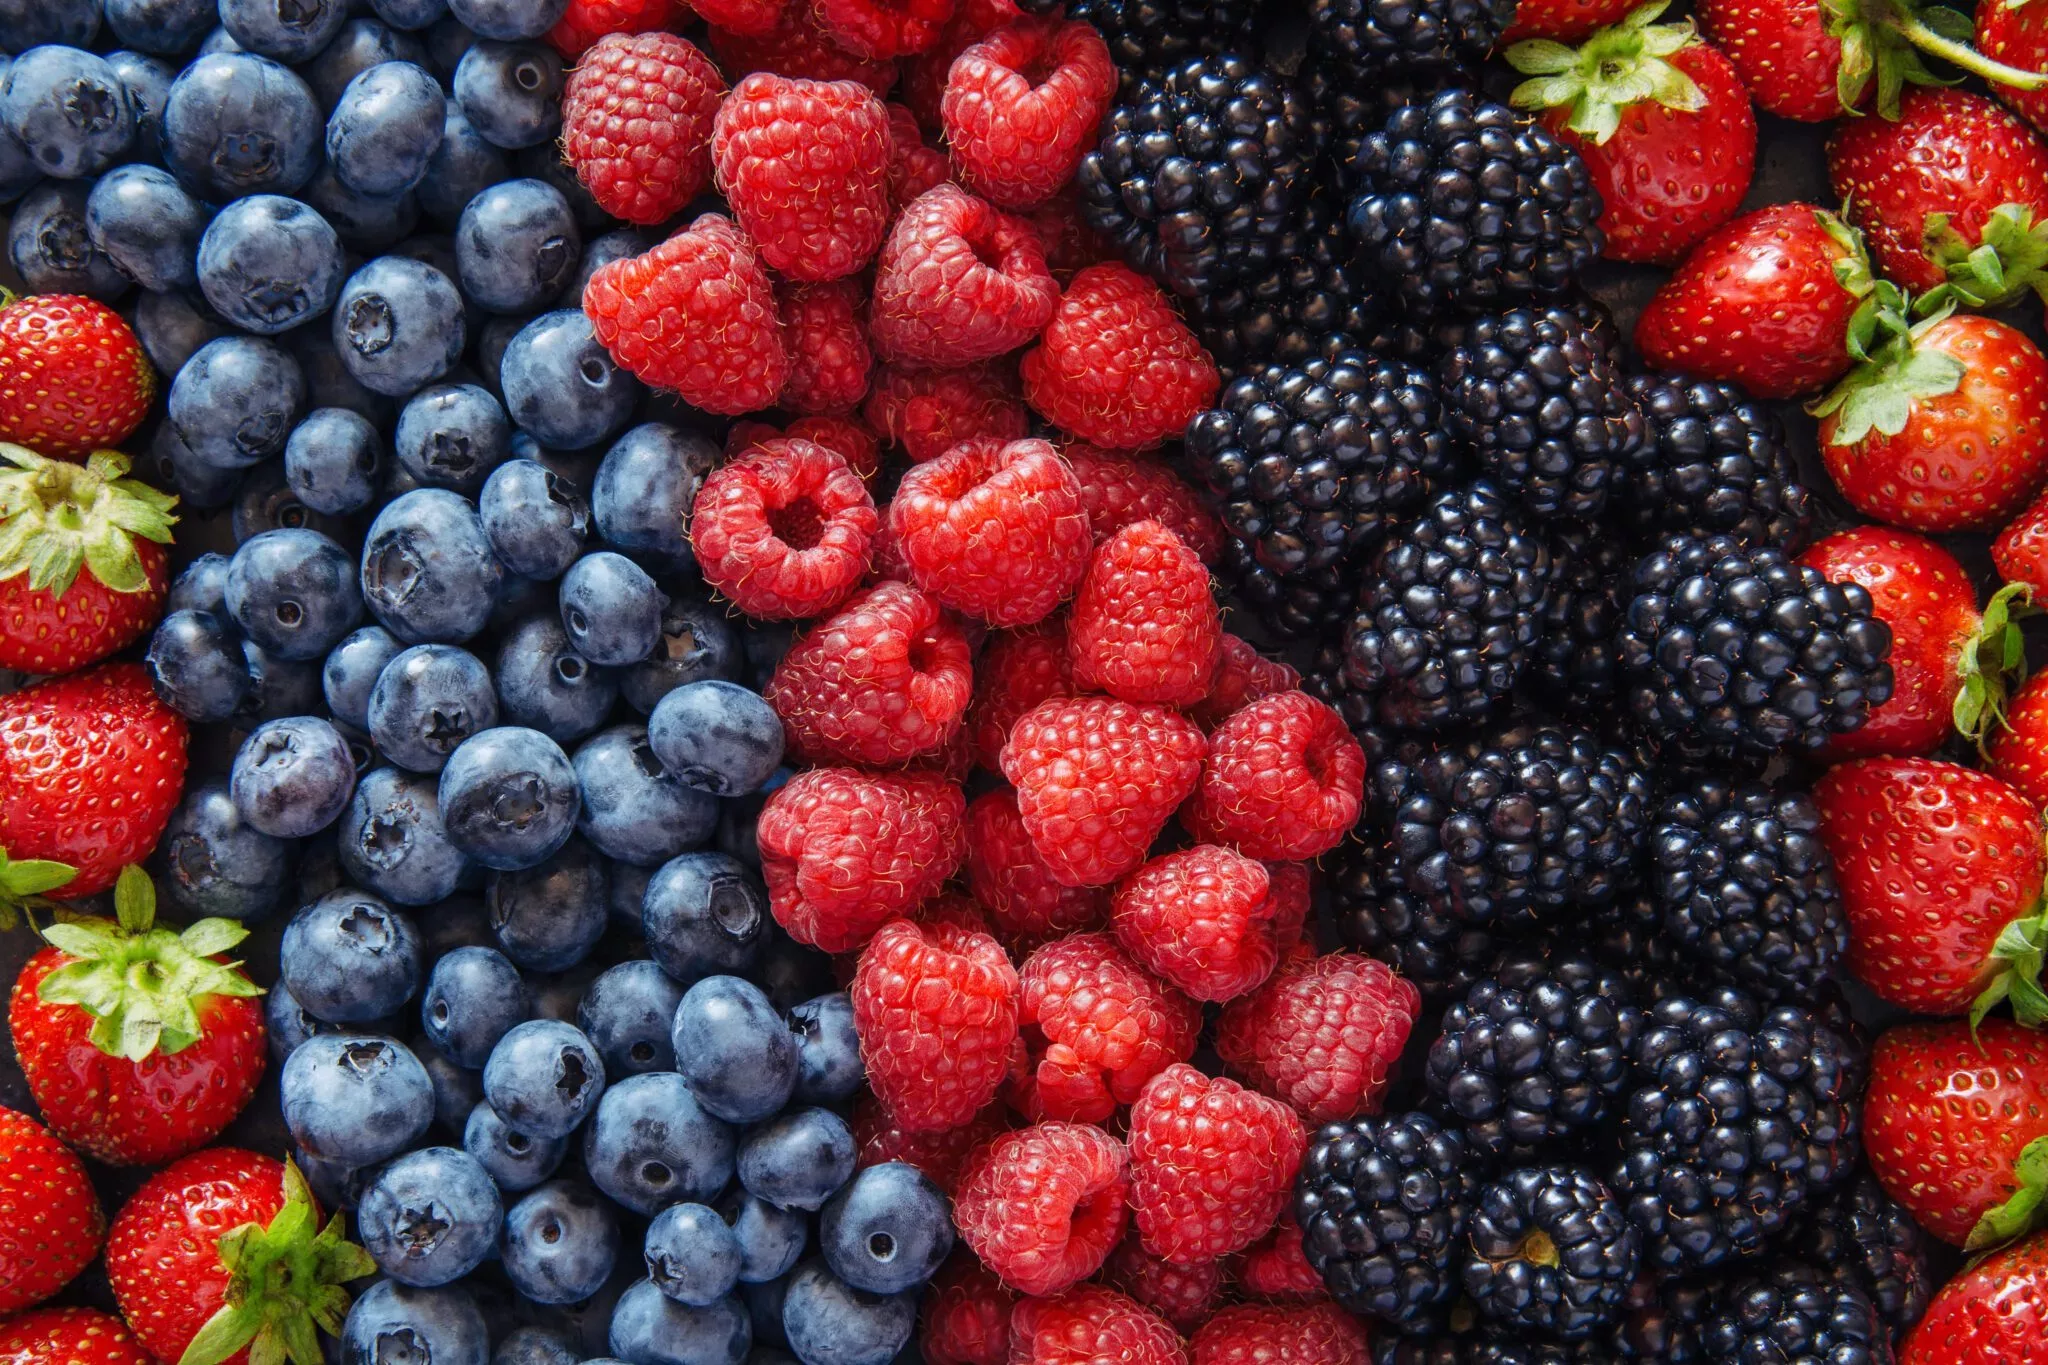 Tips for Summer Fruit